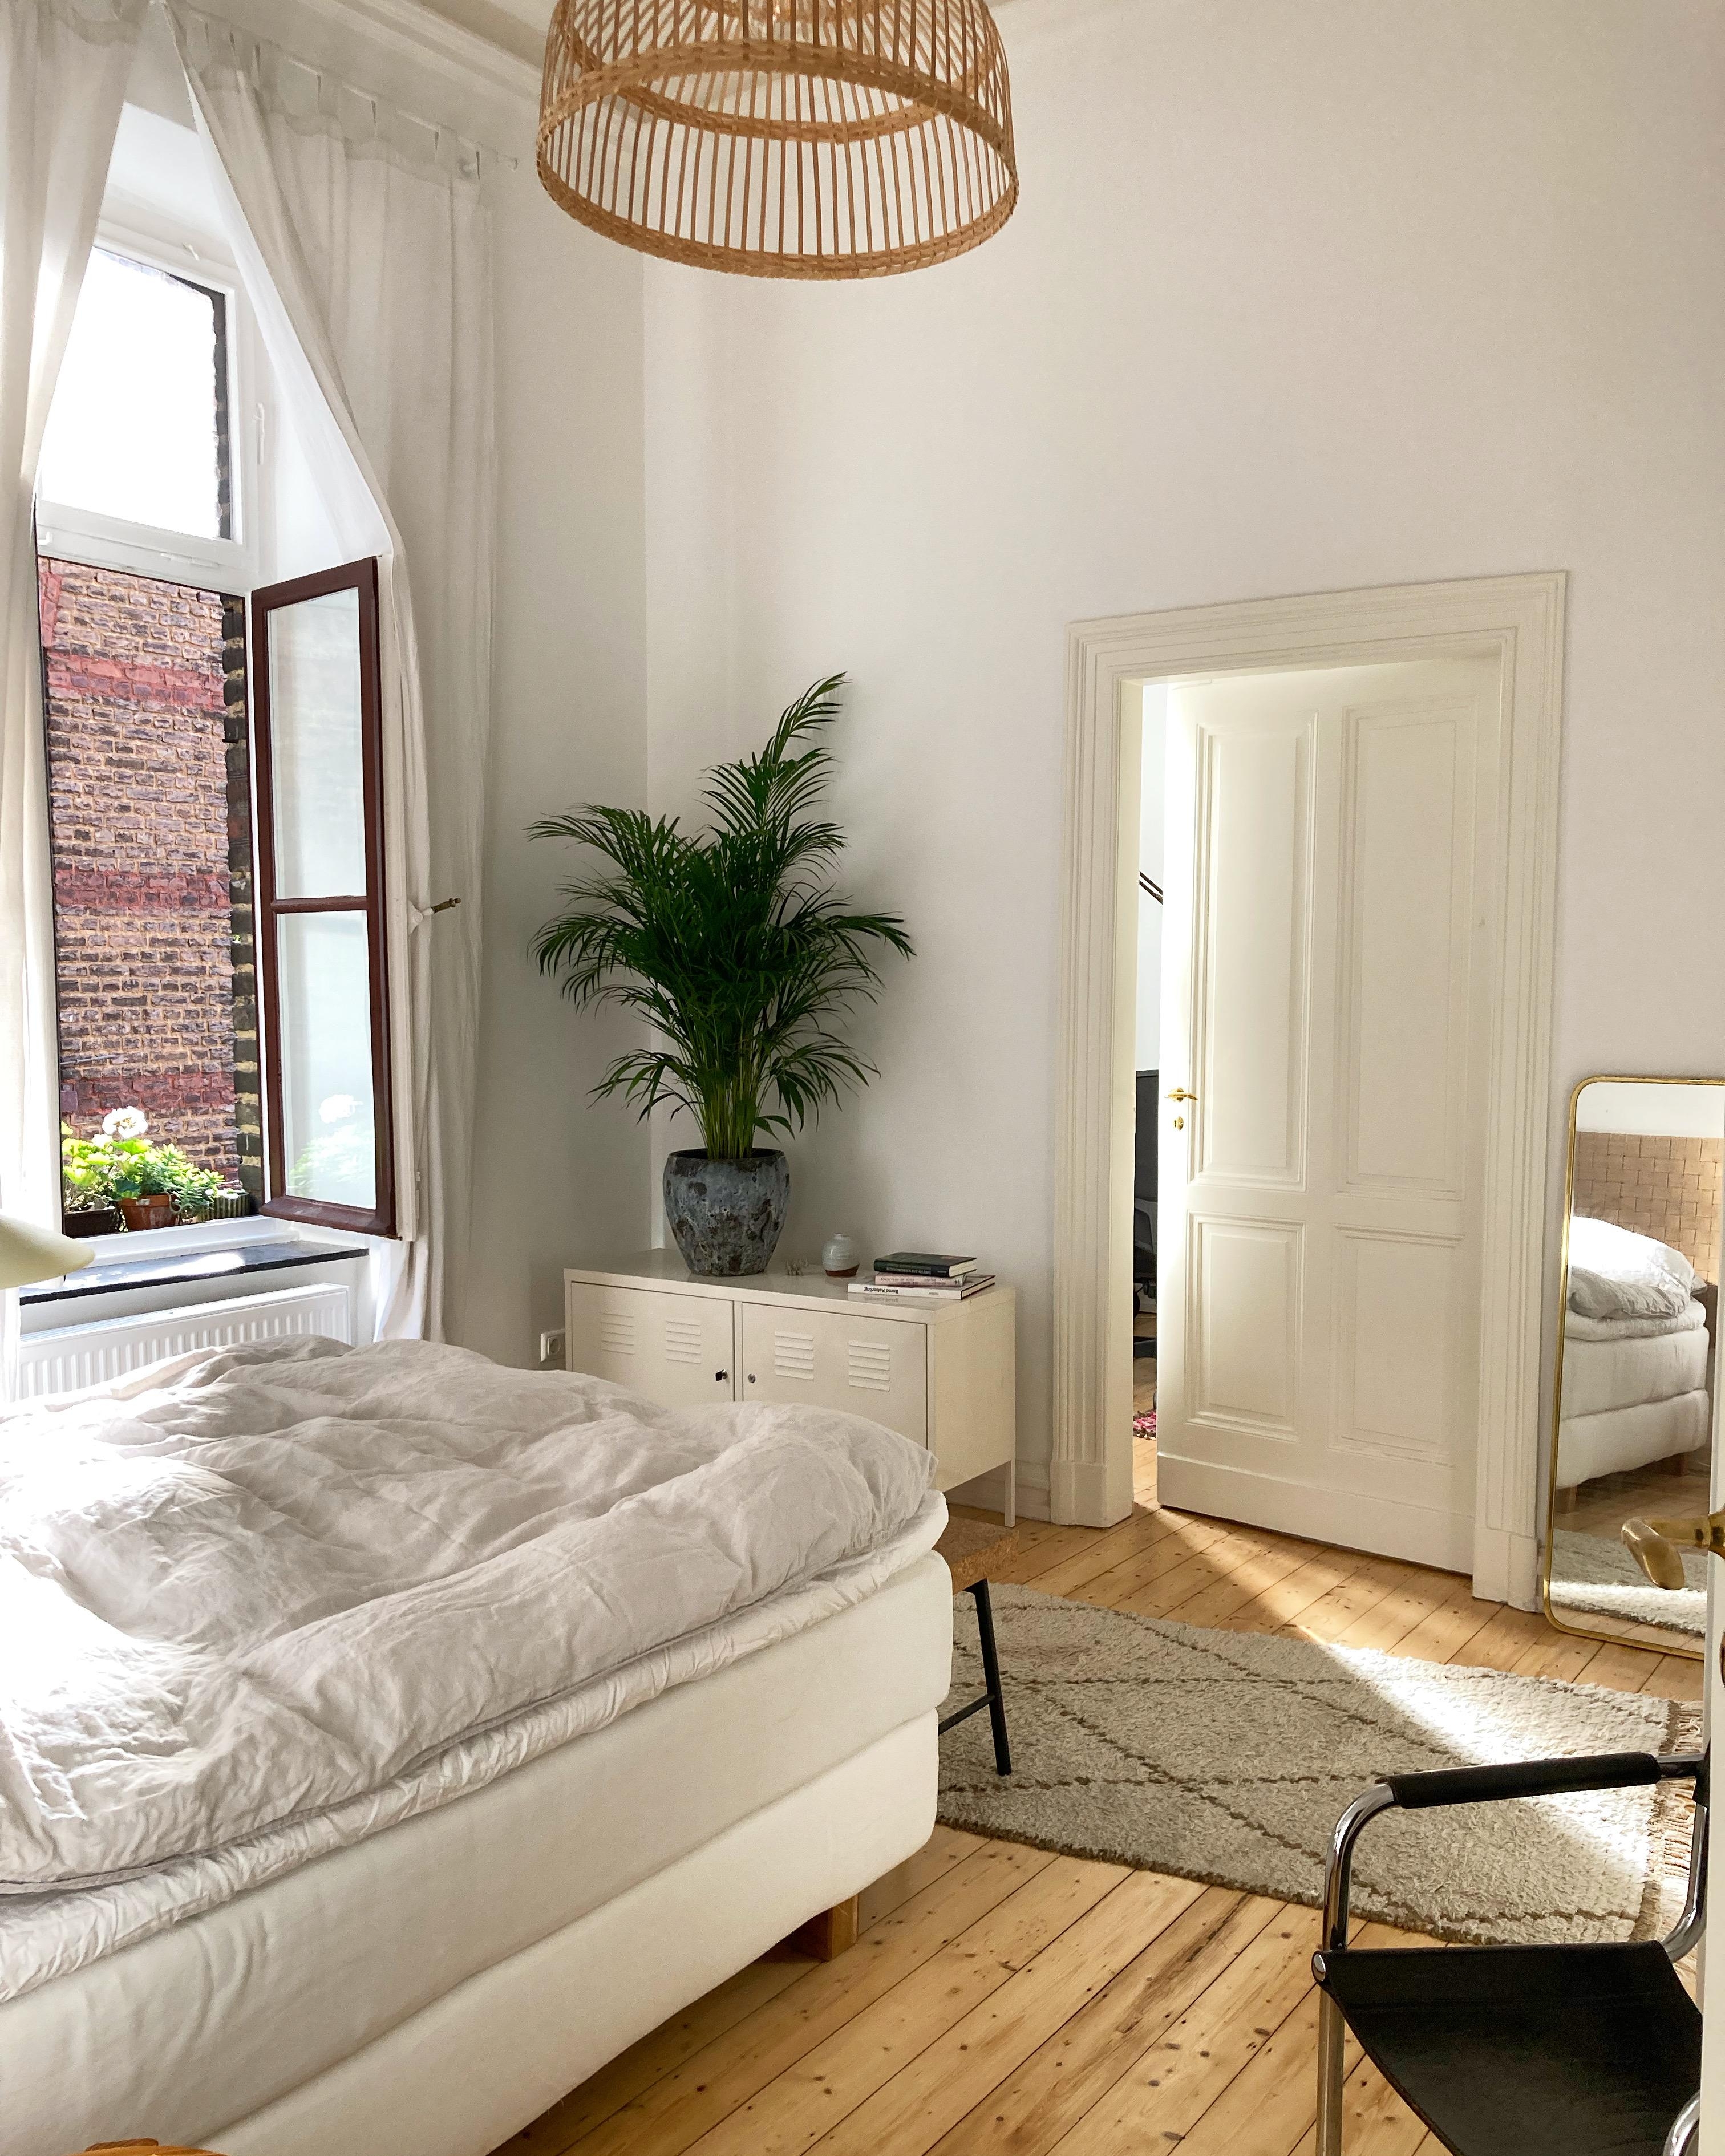 Guten Morgen Wochenende #schlafzimmer#bedroom#altbau#altbauliebe#sonnenlicht#gemütlichkeit#schlafzimmerinspo#interior